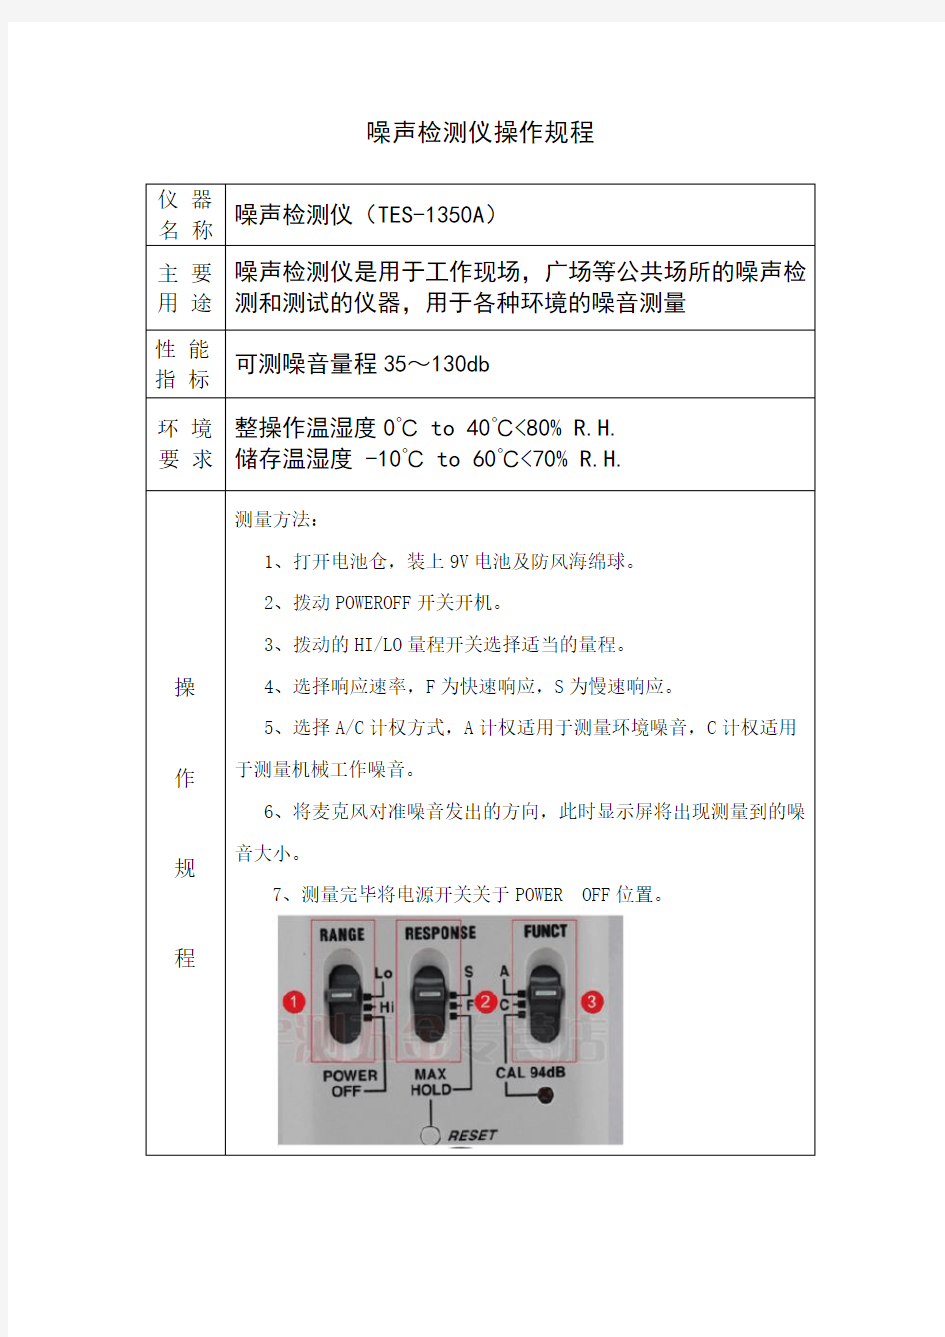 噪声检测仪 (TES- 1350A)操作规程